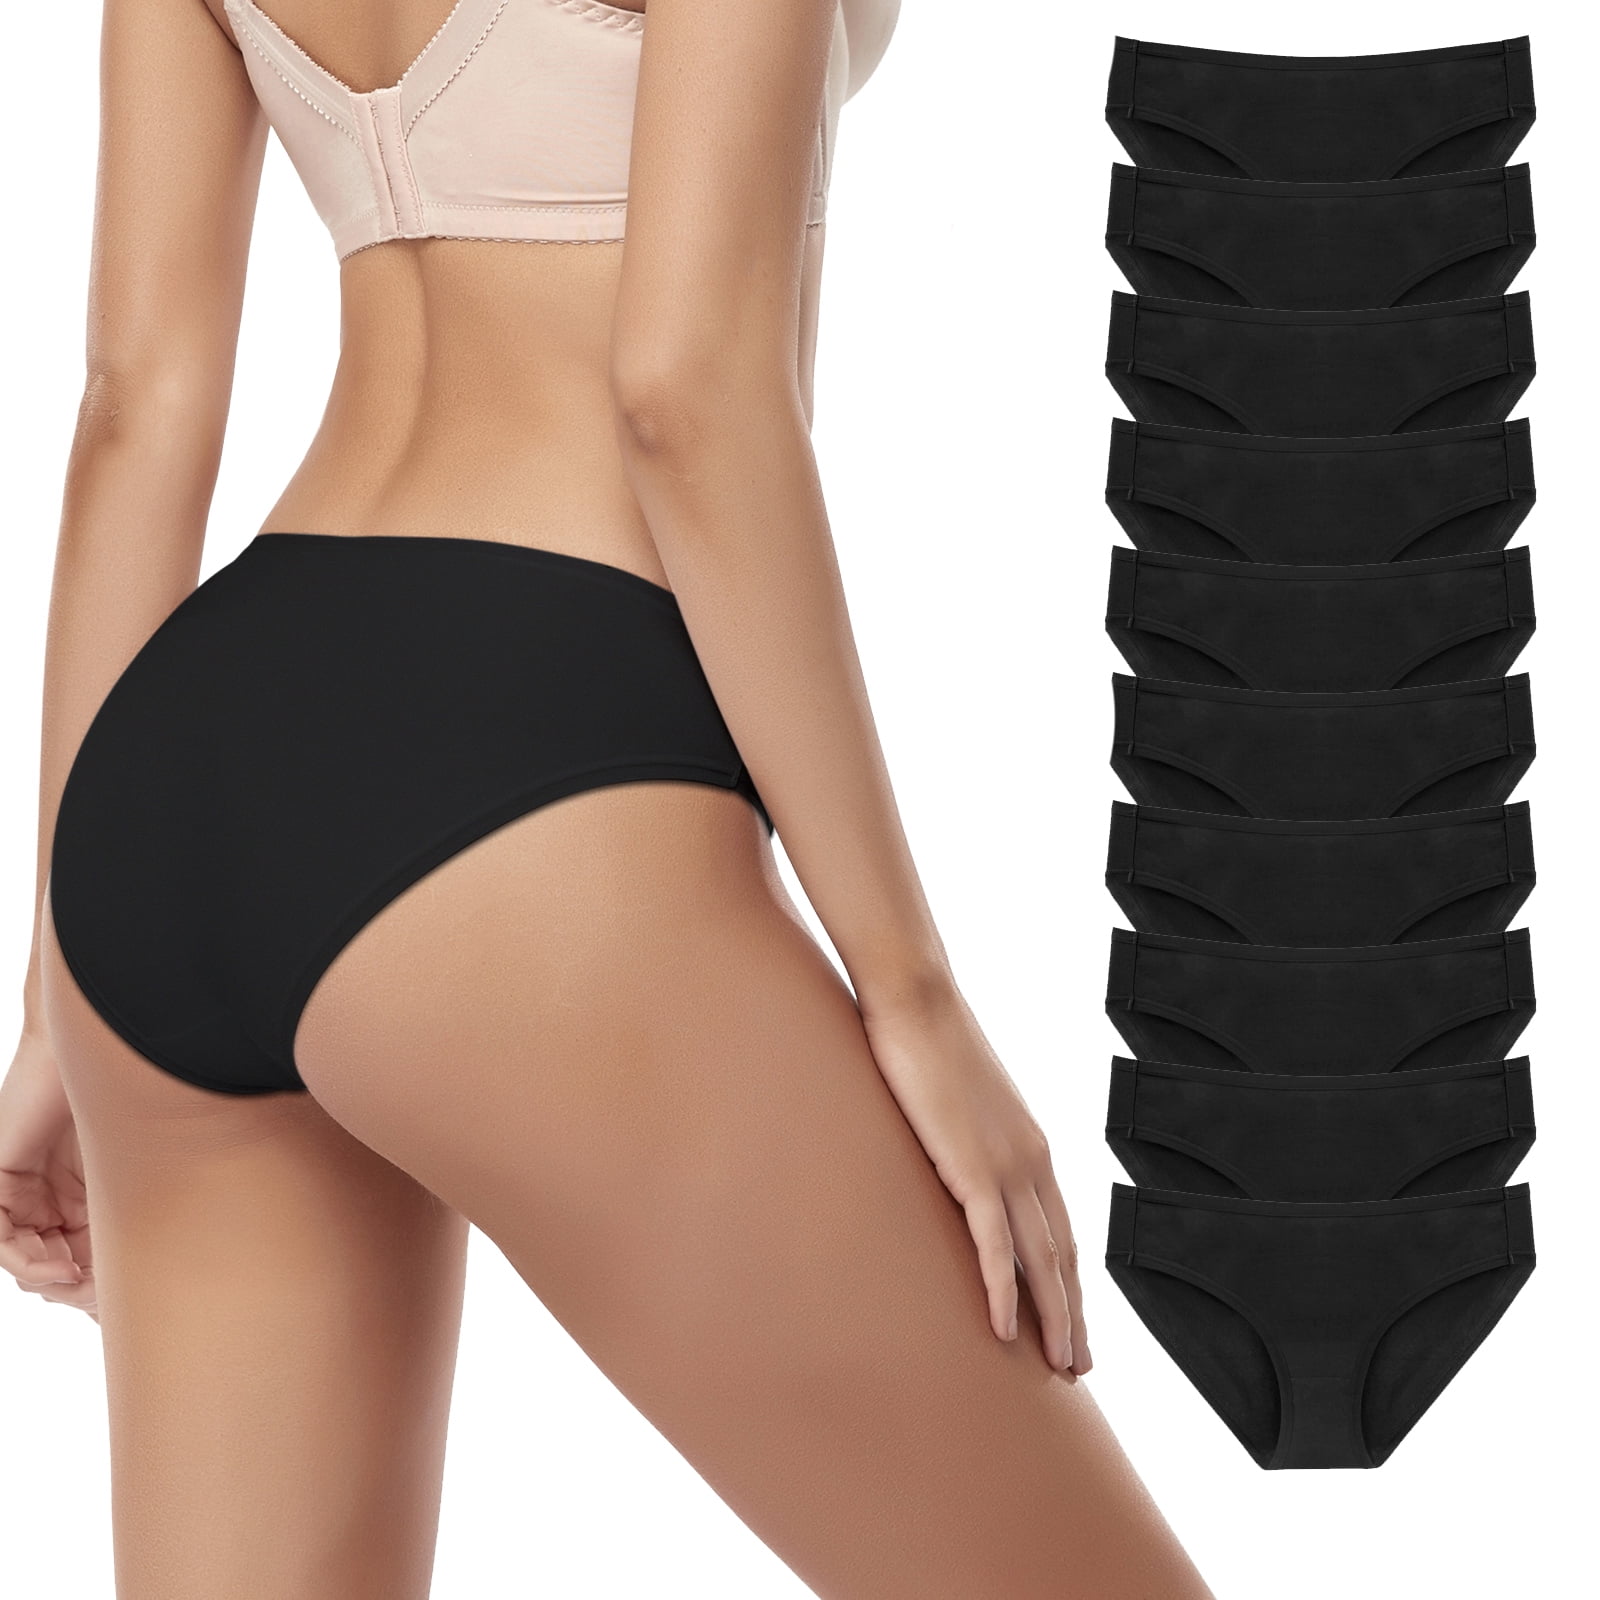 Premium 100% Cotton 1x 3x 6x 12x Ladies Women Girls Bikini Briefs Soft Underwear